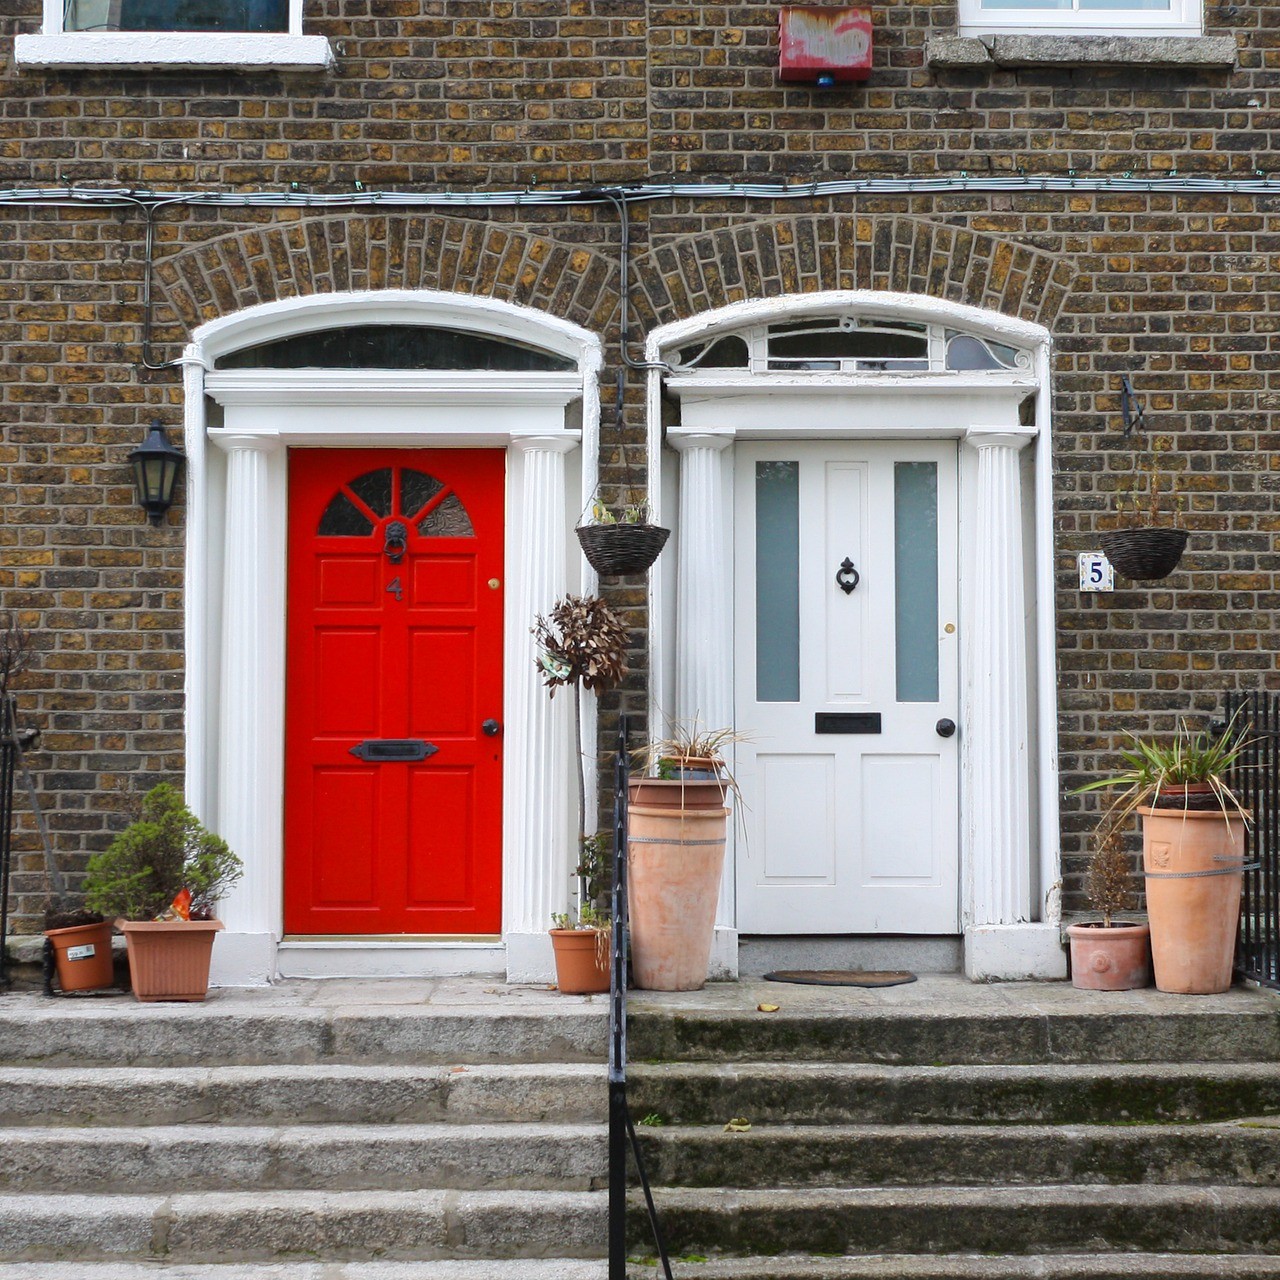 Sua acomodação na Irlanda pode ser em casas tradicionais, com portas coloridas como estas.